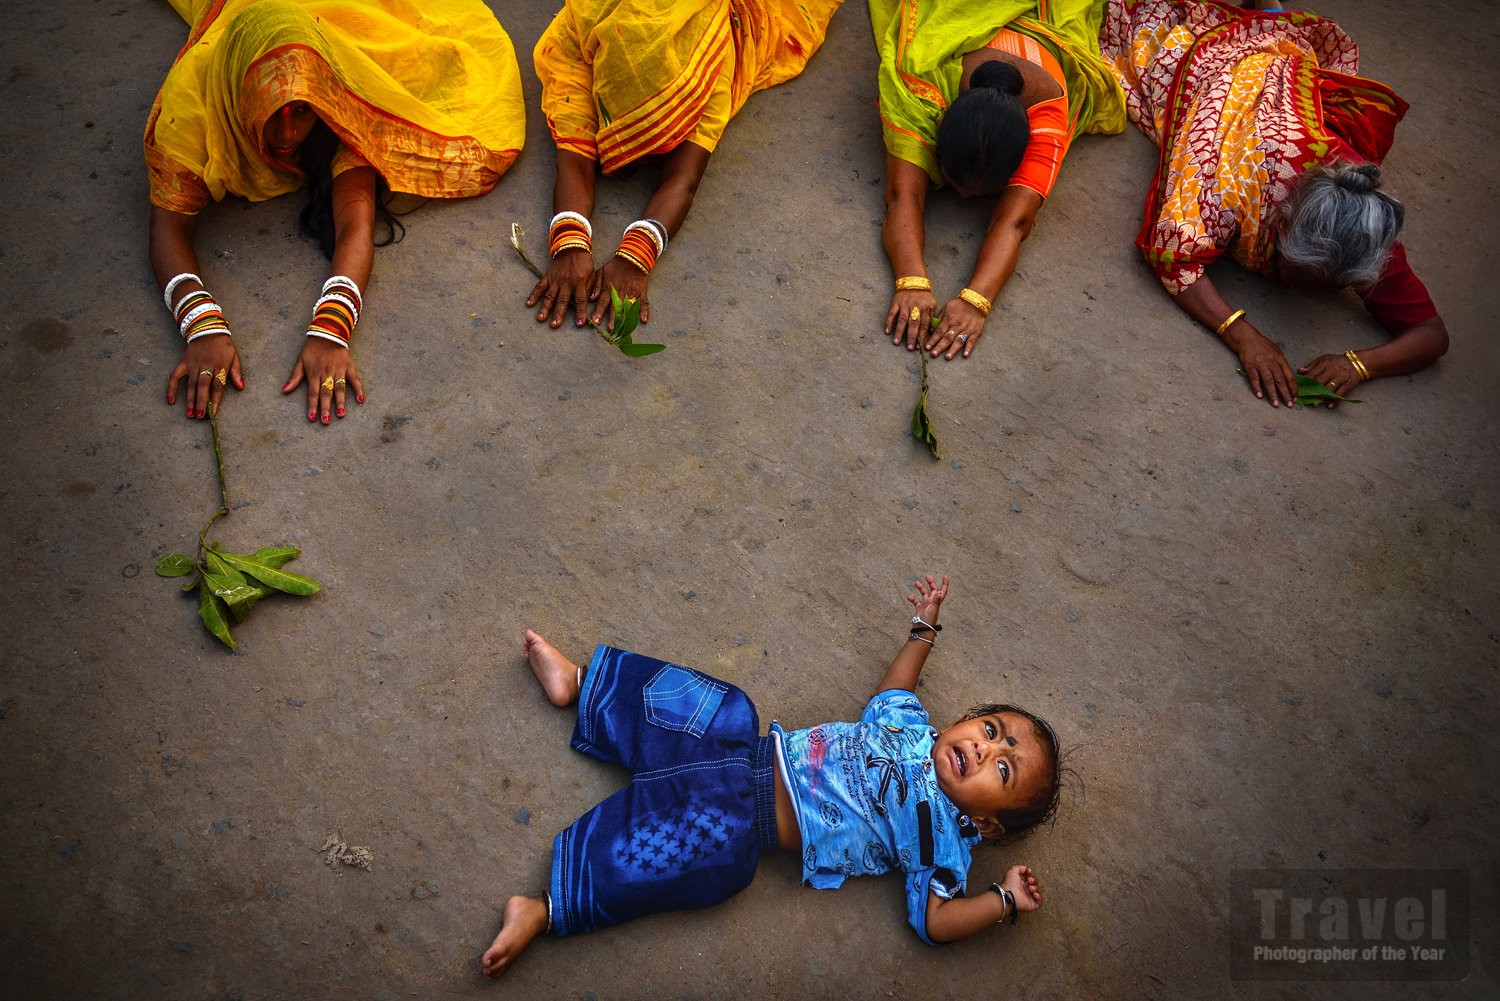 Моление о счастливом будущем. Калькутта, Индия. Лучшее одиночное изображение в категории Люди и культуры, 2019. Автор Дебдатта Чакраборти